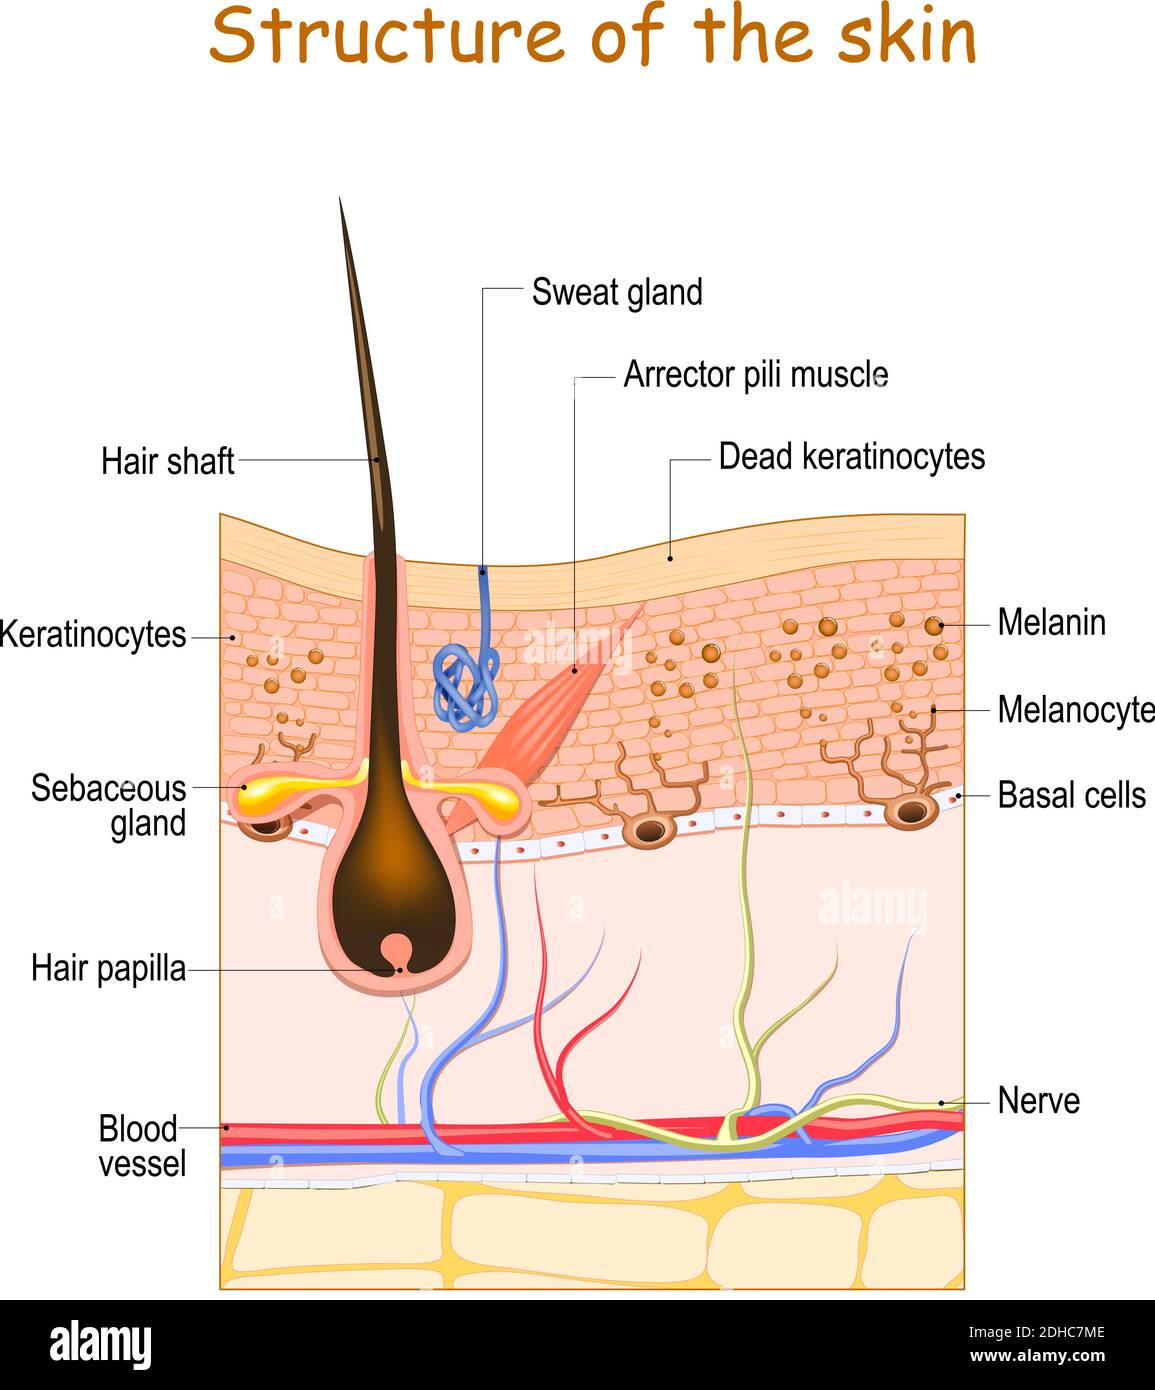 Hautschichten mit Haarfollikel, Schweißdrüse und Talgdrüse. Zellstruktur der menschlichen Haut. vektor-Illustration Stock Vektor